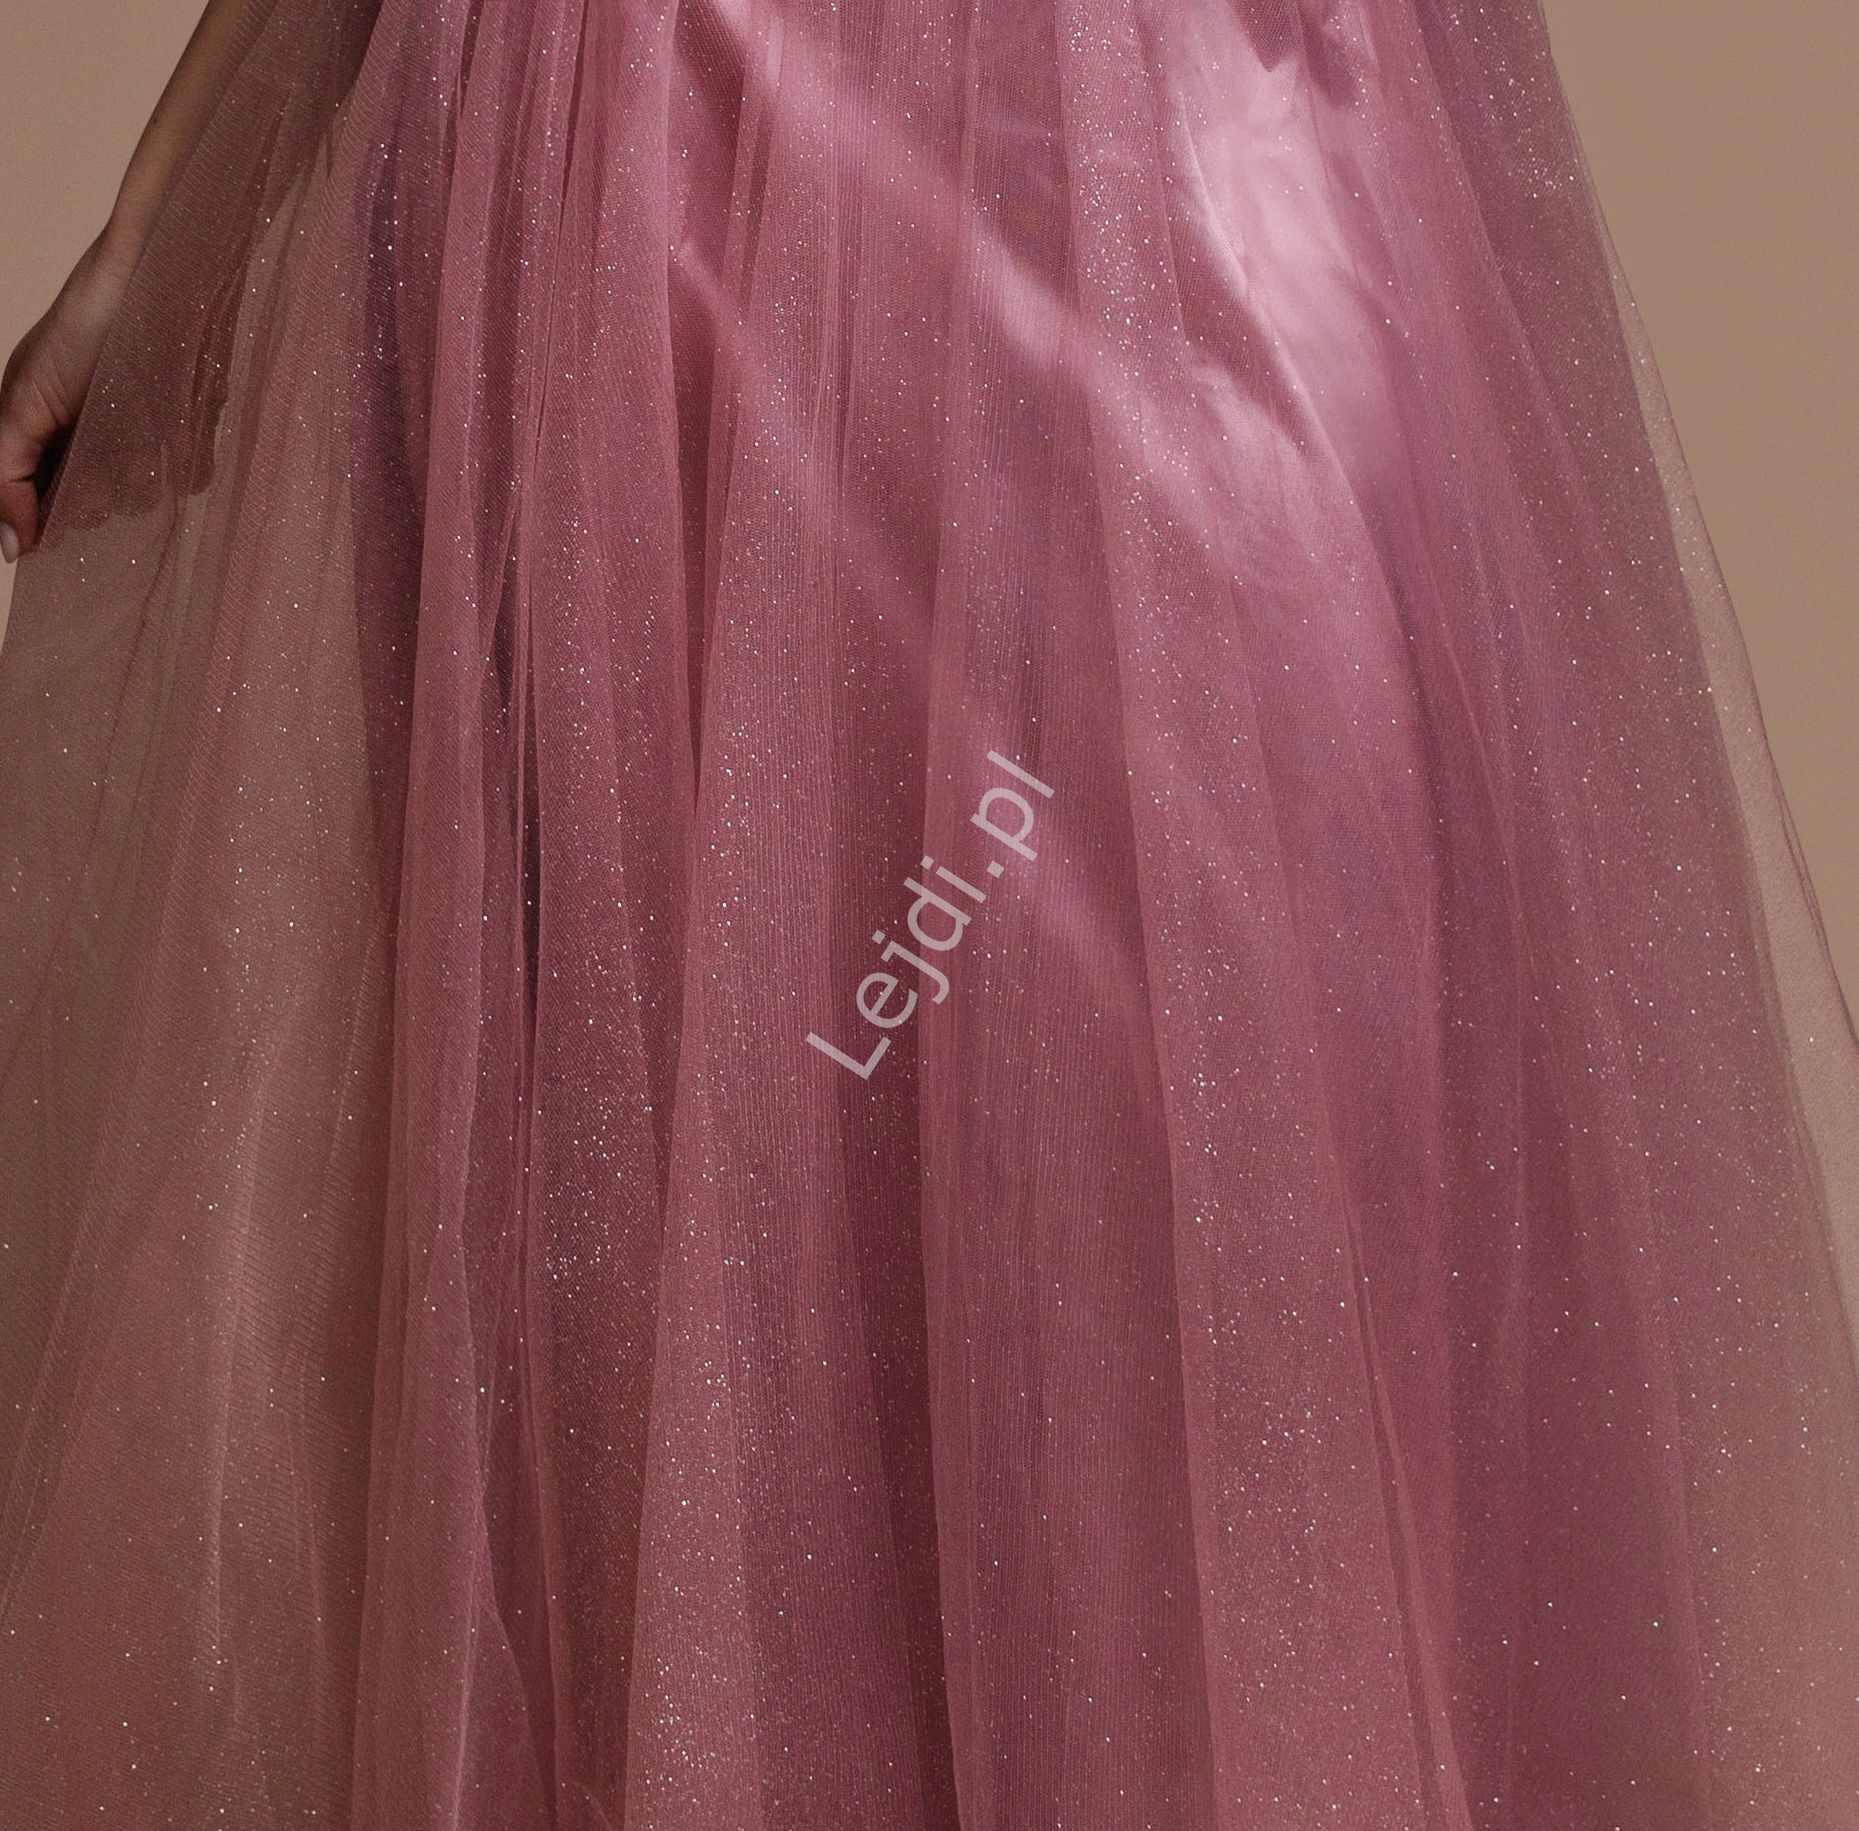 Tiulowa suknia z gorsetową górą w kolorze brudnego różu 2357